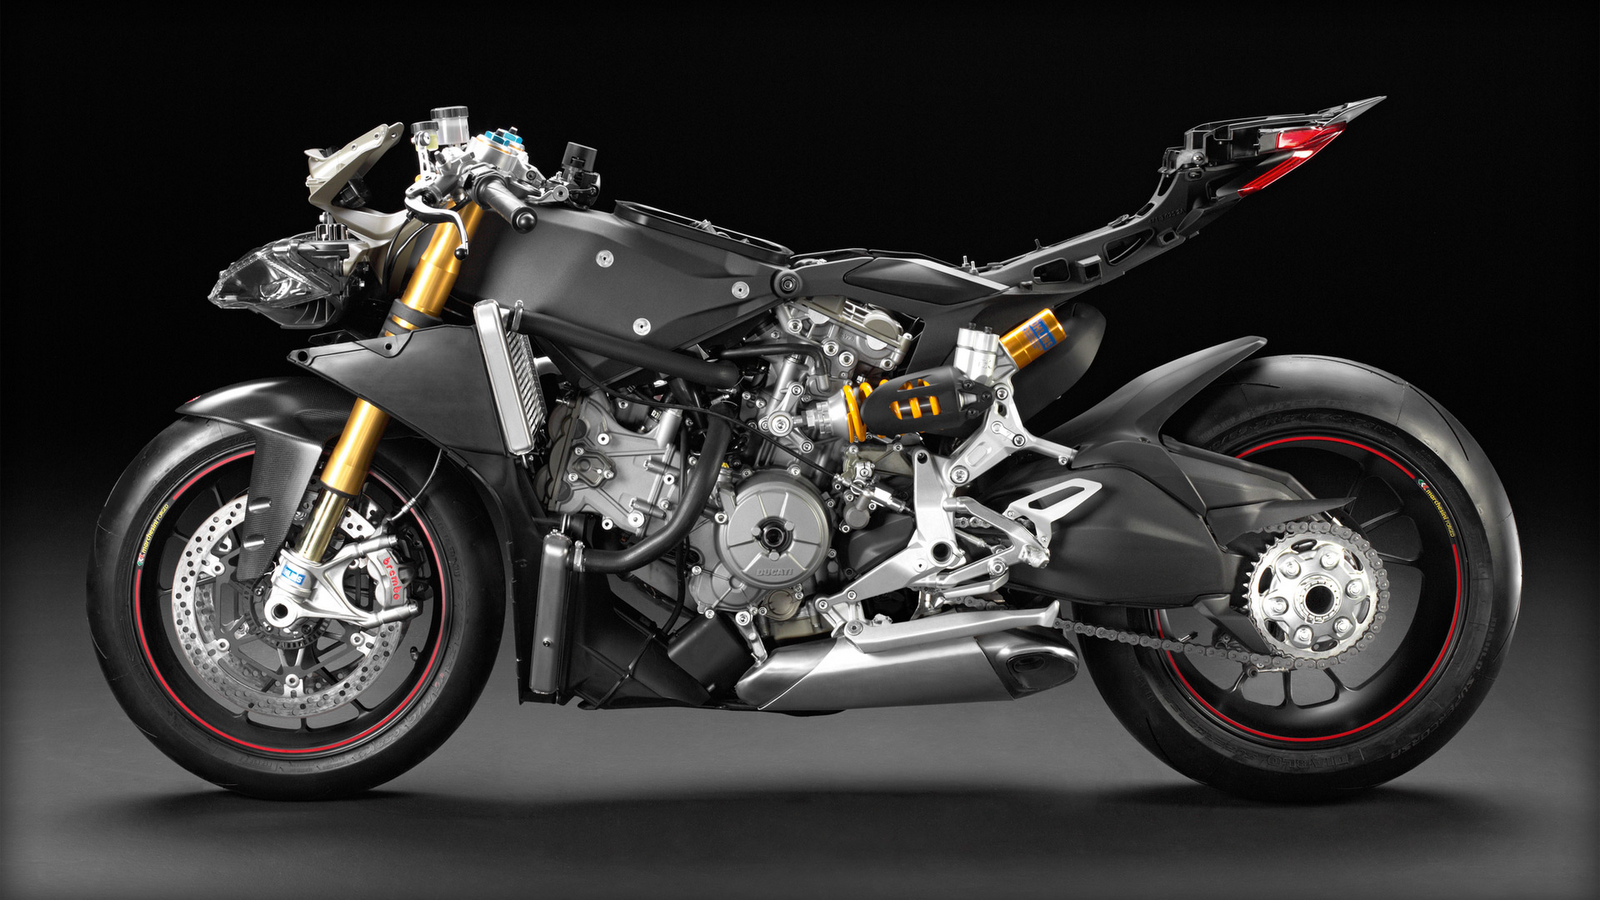 Harga Motor Ducati Terbaru Spesifikasi Panigale S Tricolore